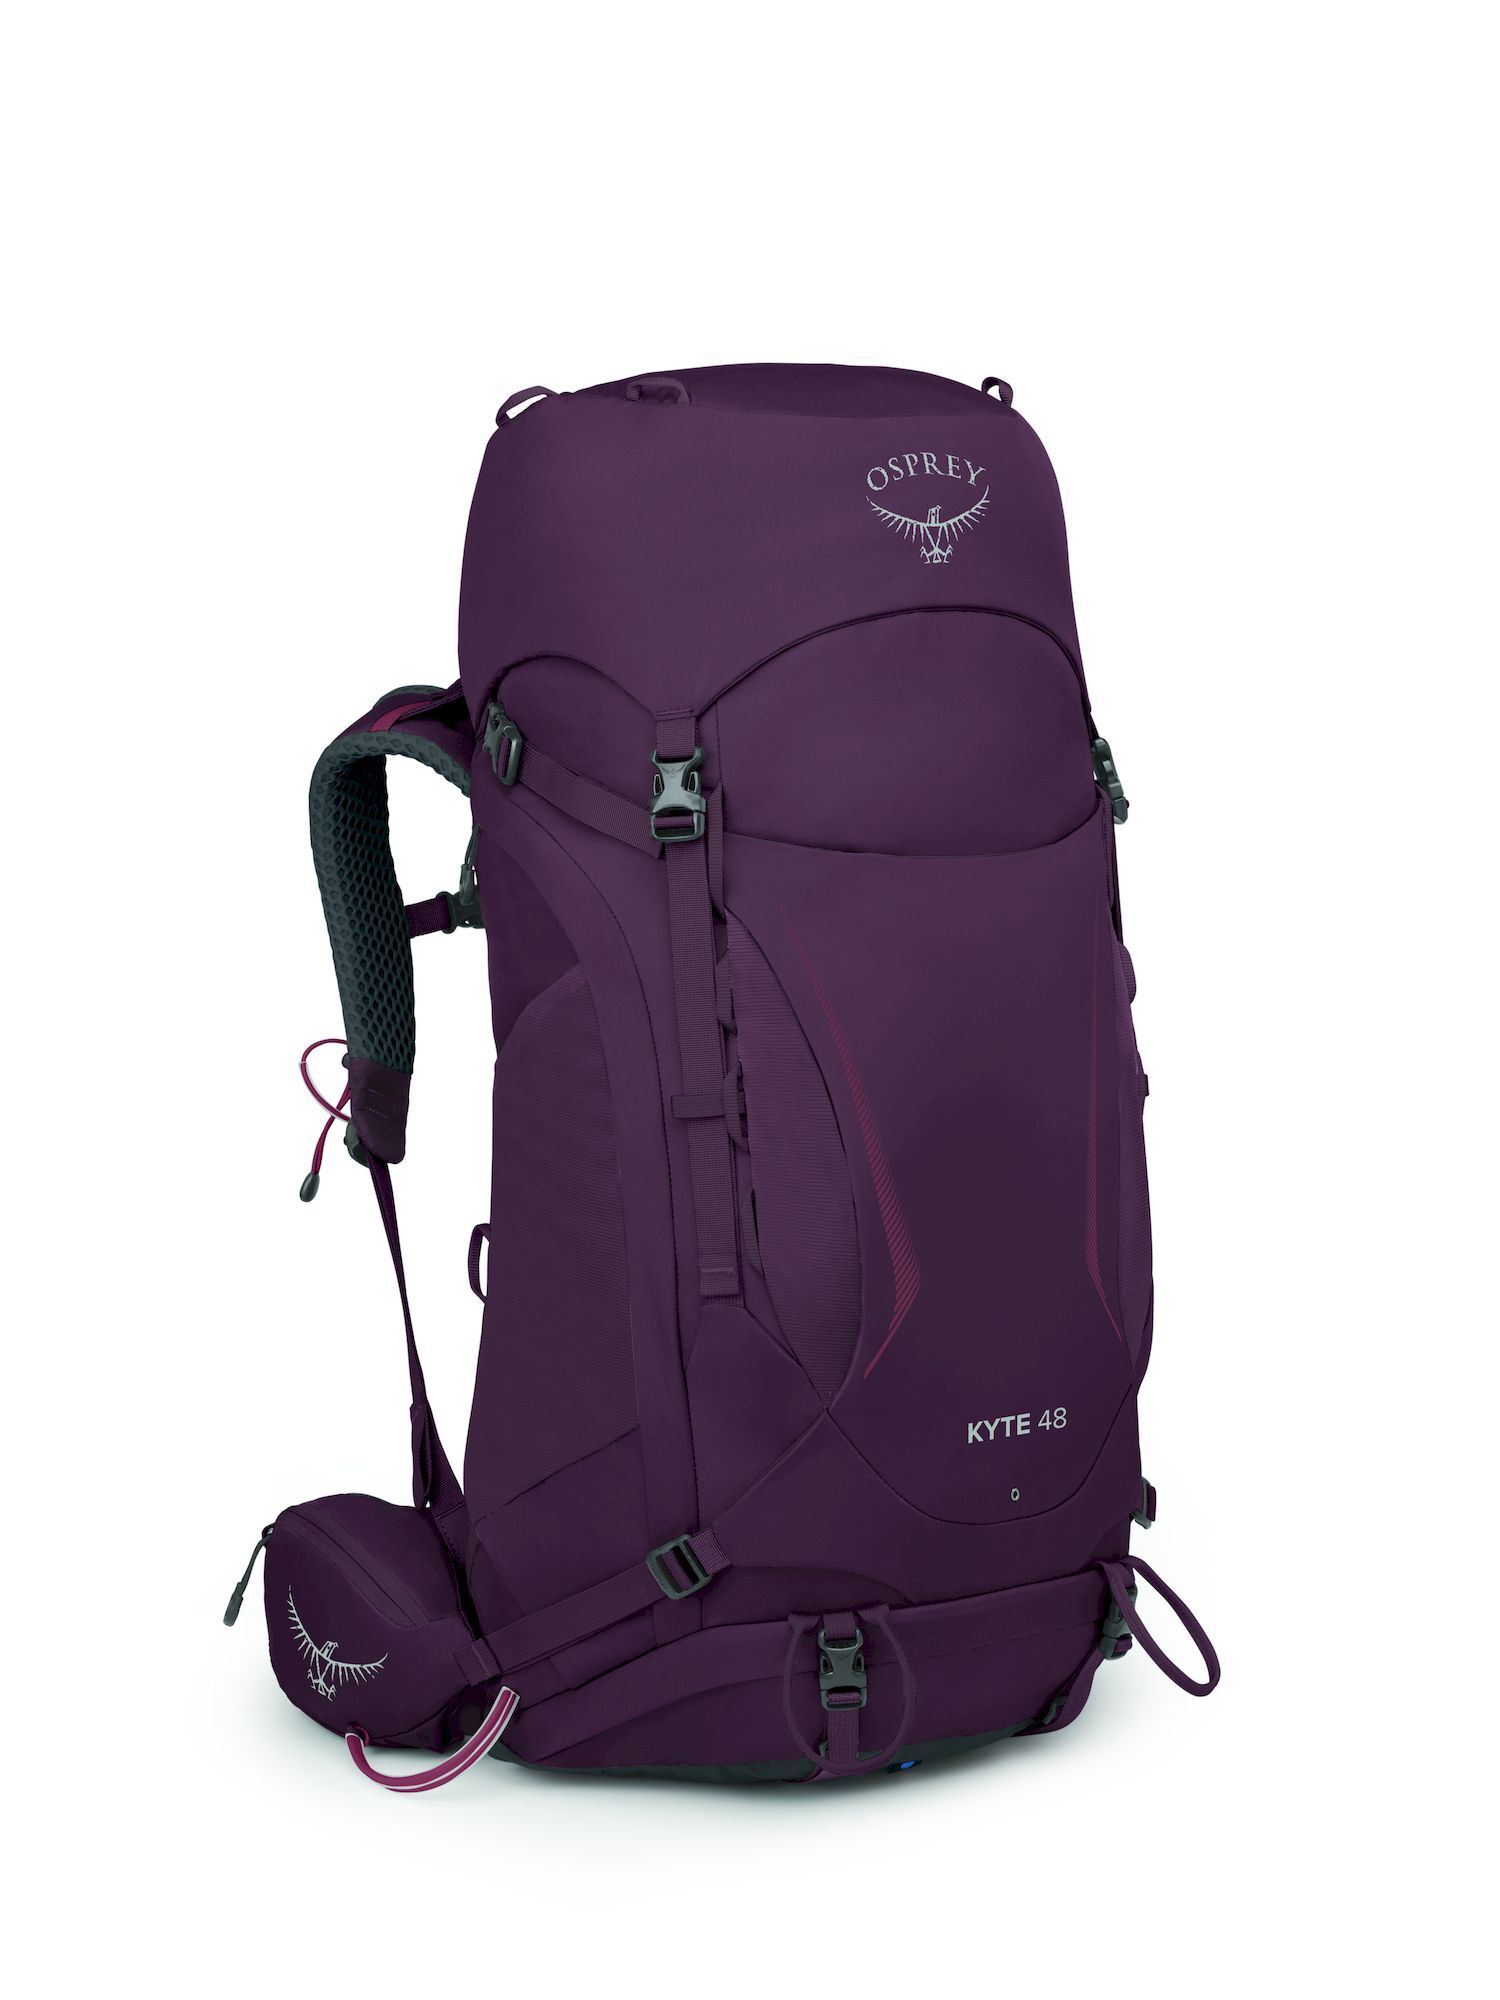 Osprey Kyte 48 - Hiking backpack - Women's | Hardloop